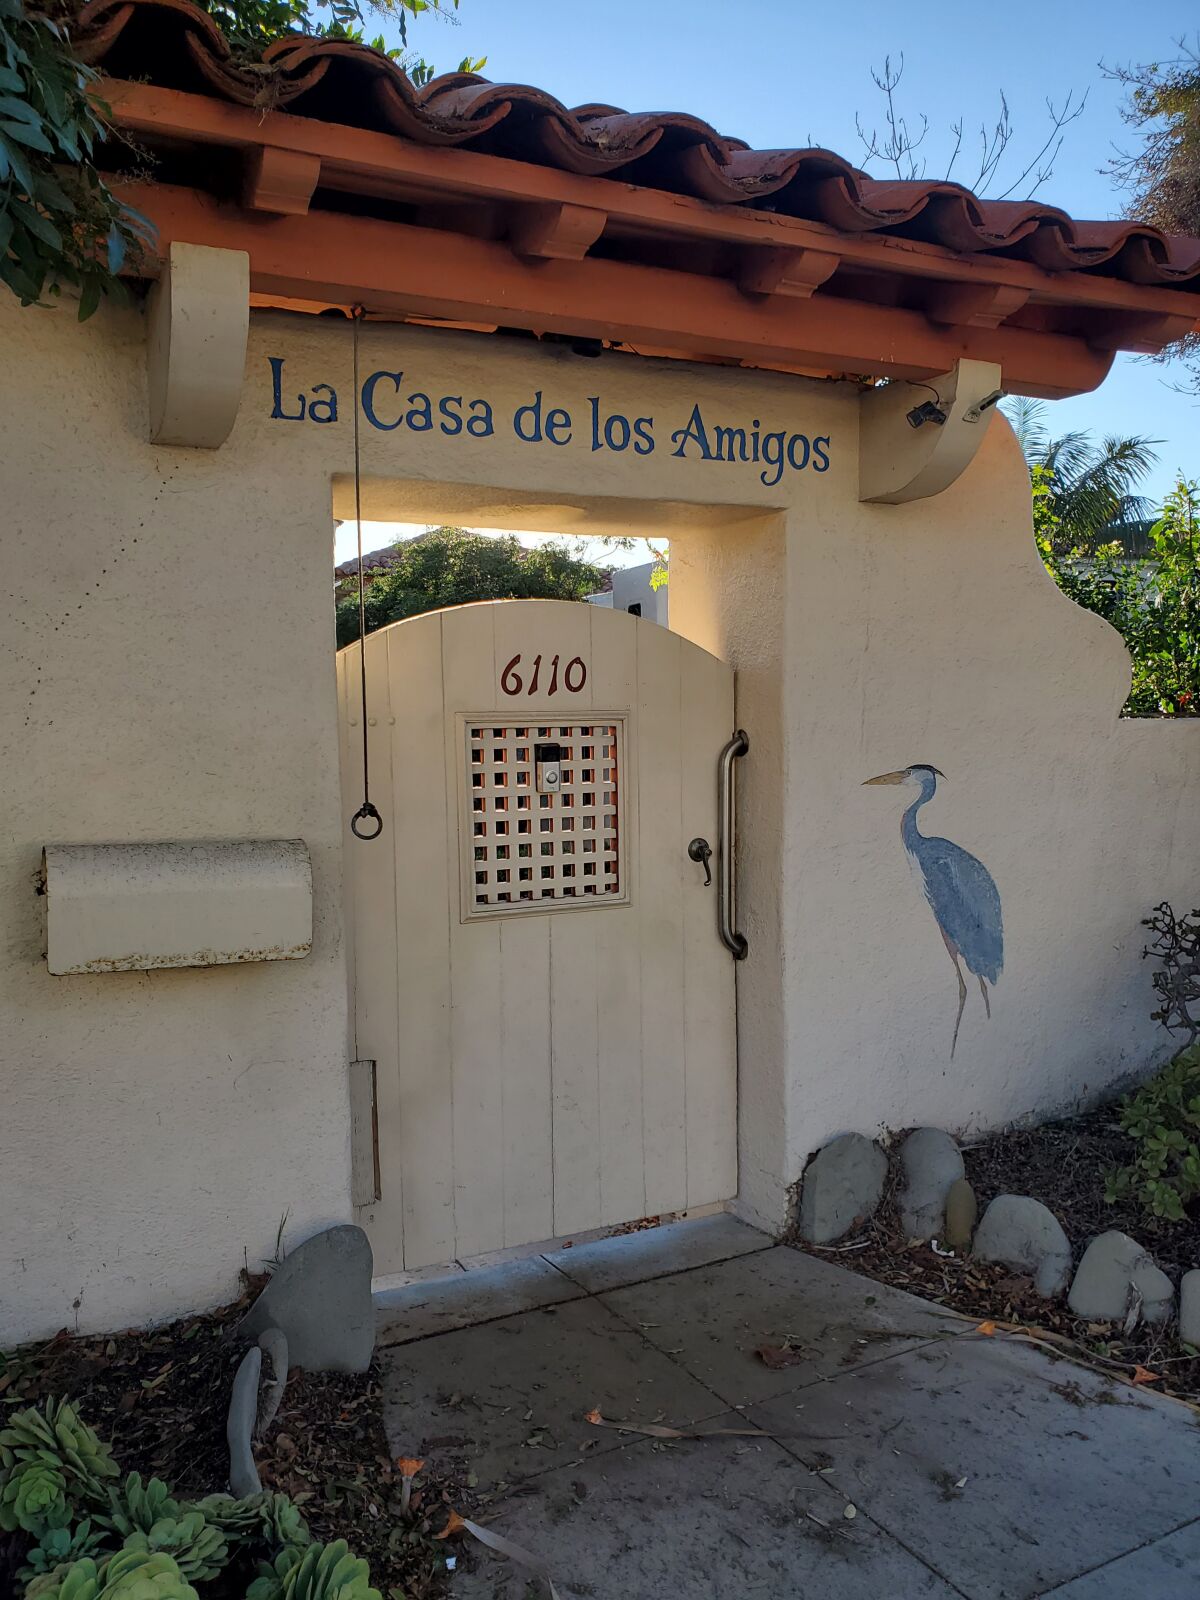 The frontage of La Casa de los Amigos at 6110 Camino de la Costa